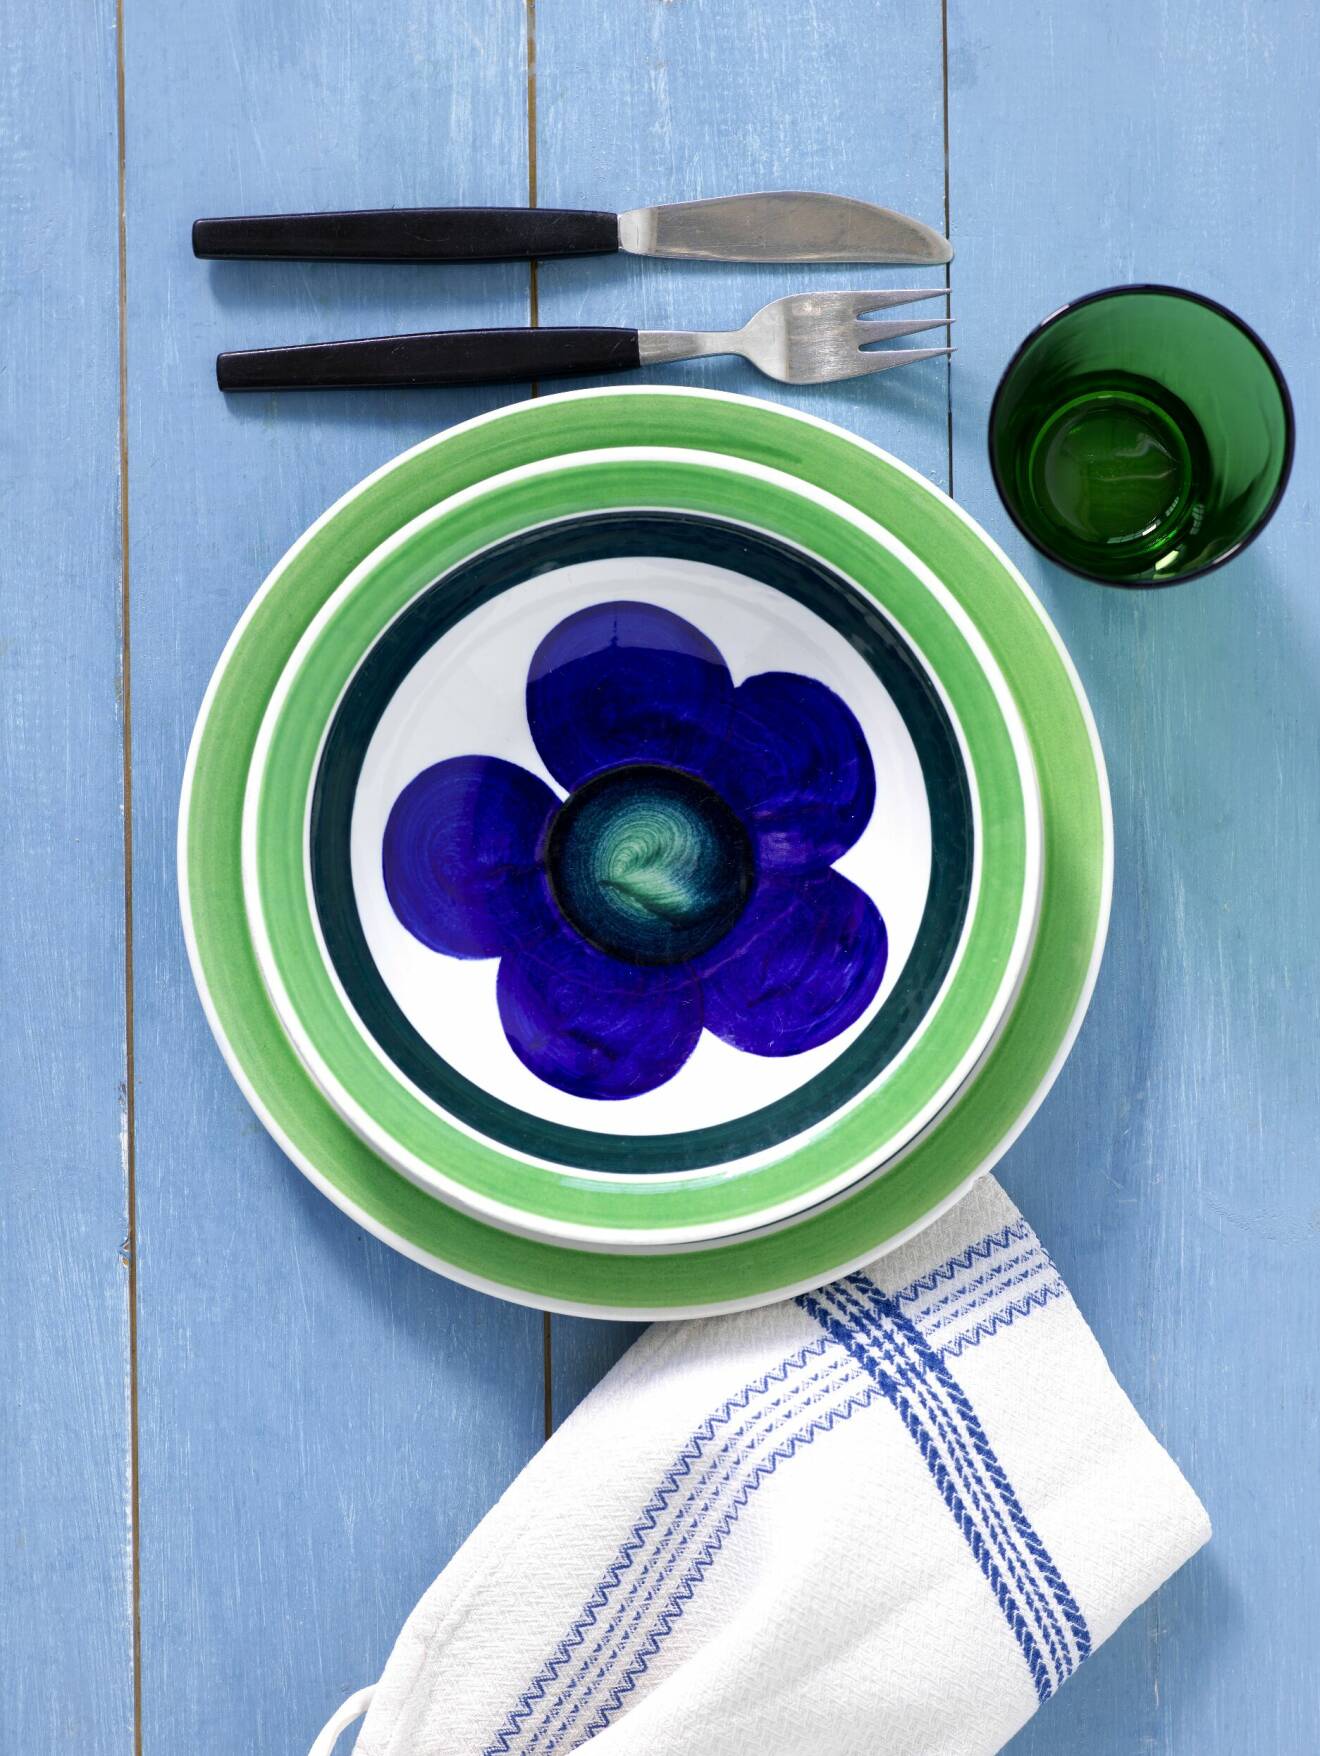 Tallrikar från Marianne Westmans serie Sippa i grönt, vitt och blått med gaffel och kniv med svart skaft och ett grönt glas på ett blått träbord.